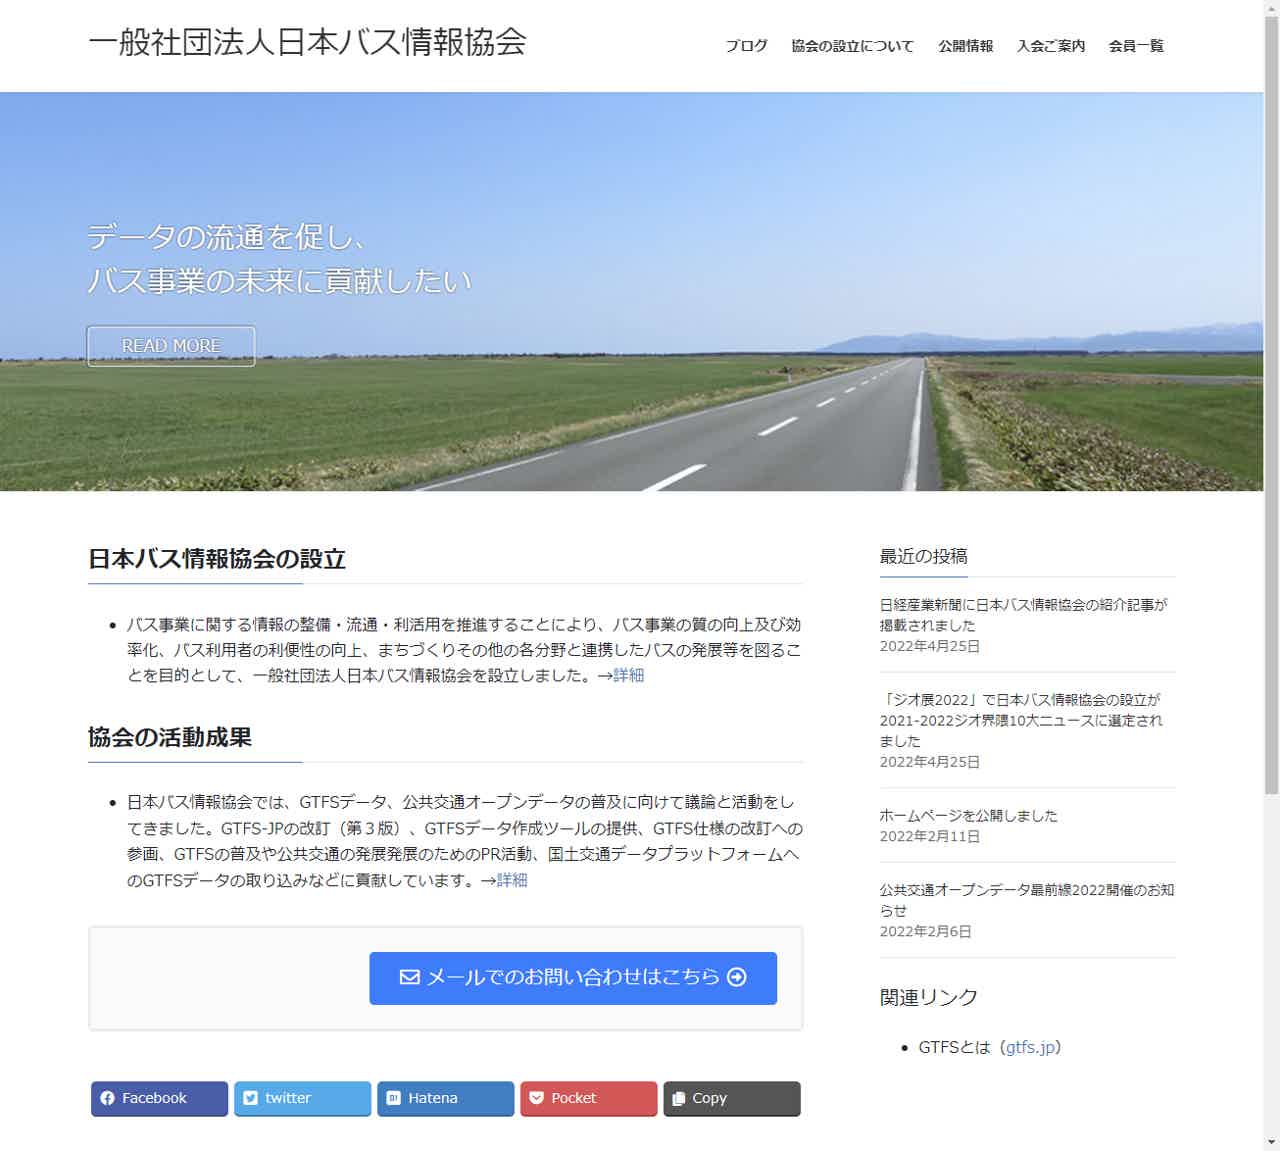 「日本バス情報協会」公式ウェブサイト